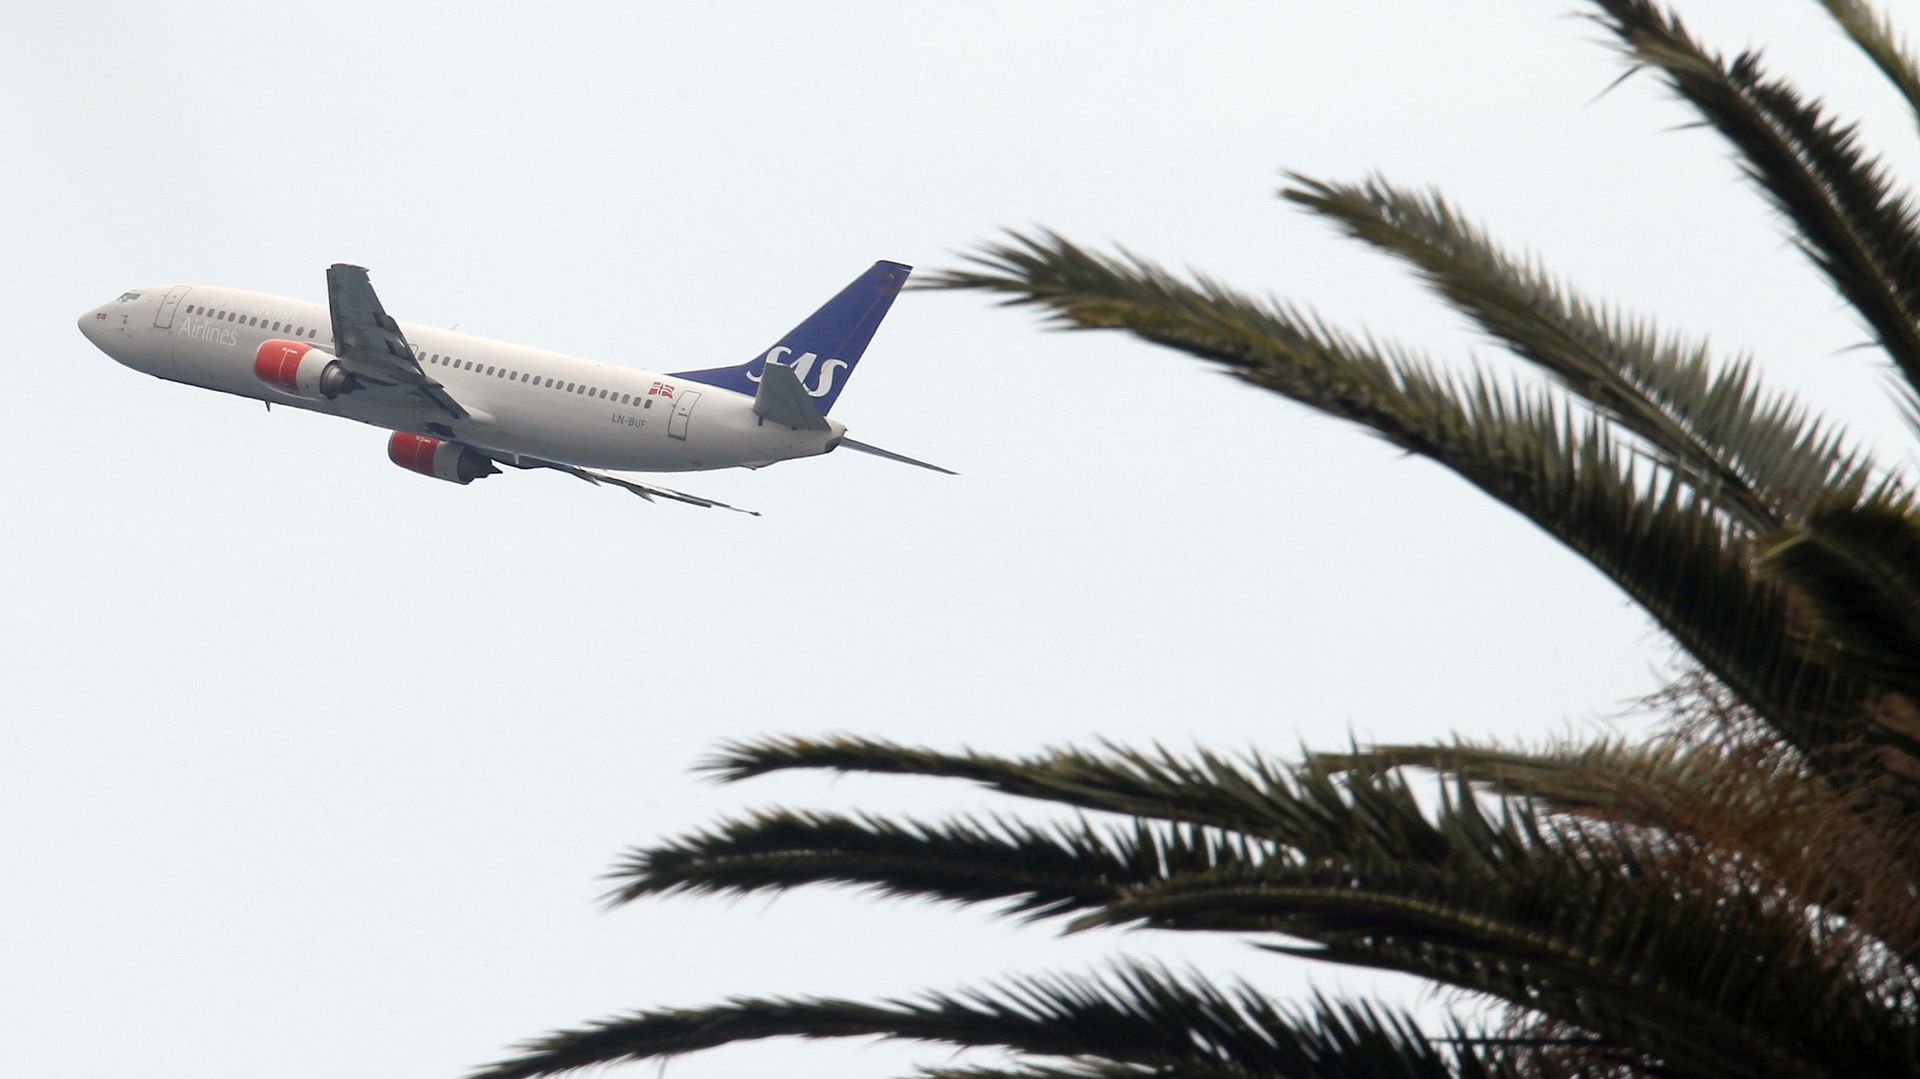 Avion de ligne décollant de l'aéroport de la Côte d'Azur, en 2010